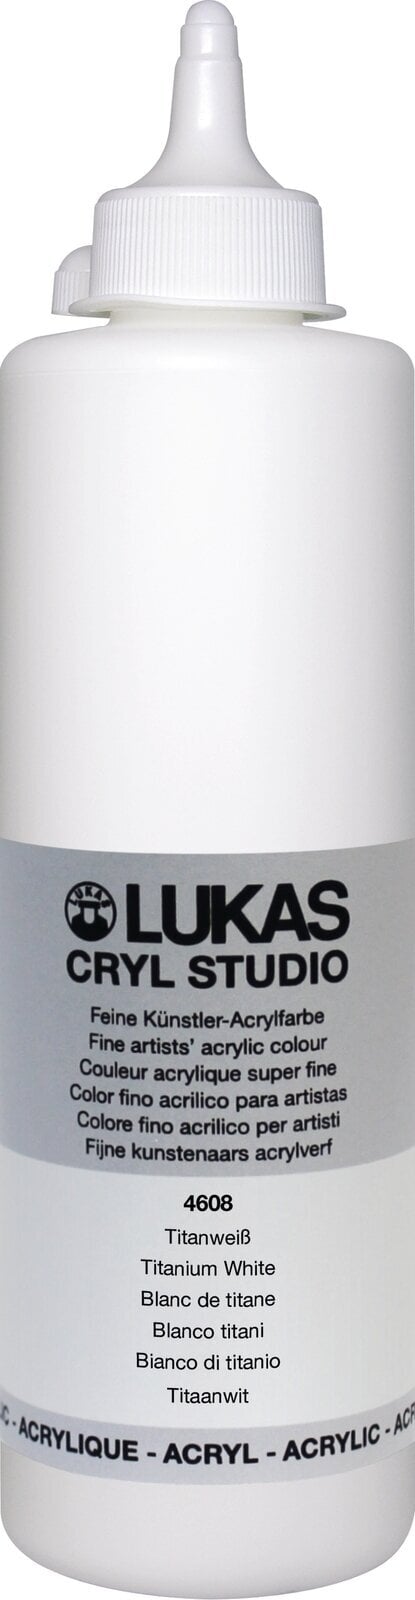 Acrylverf Lukas Cryl Studio Acrylverf 500 ml Titanium White